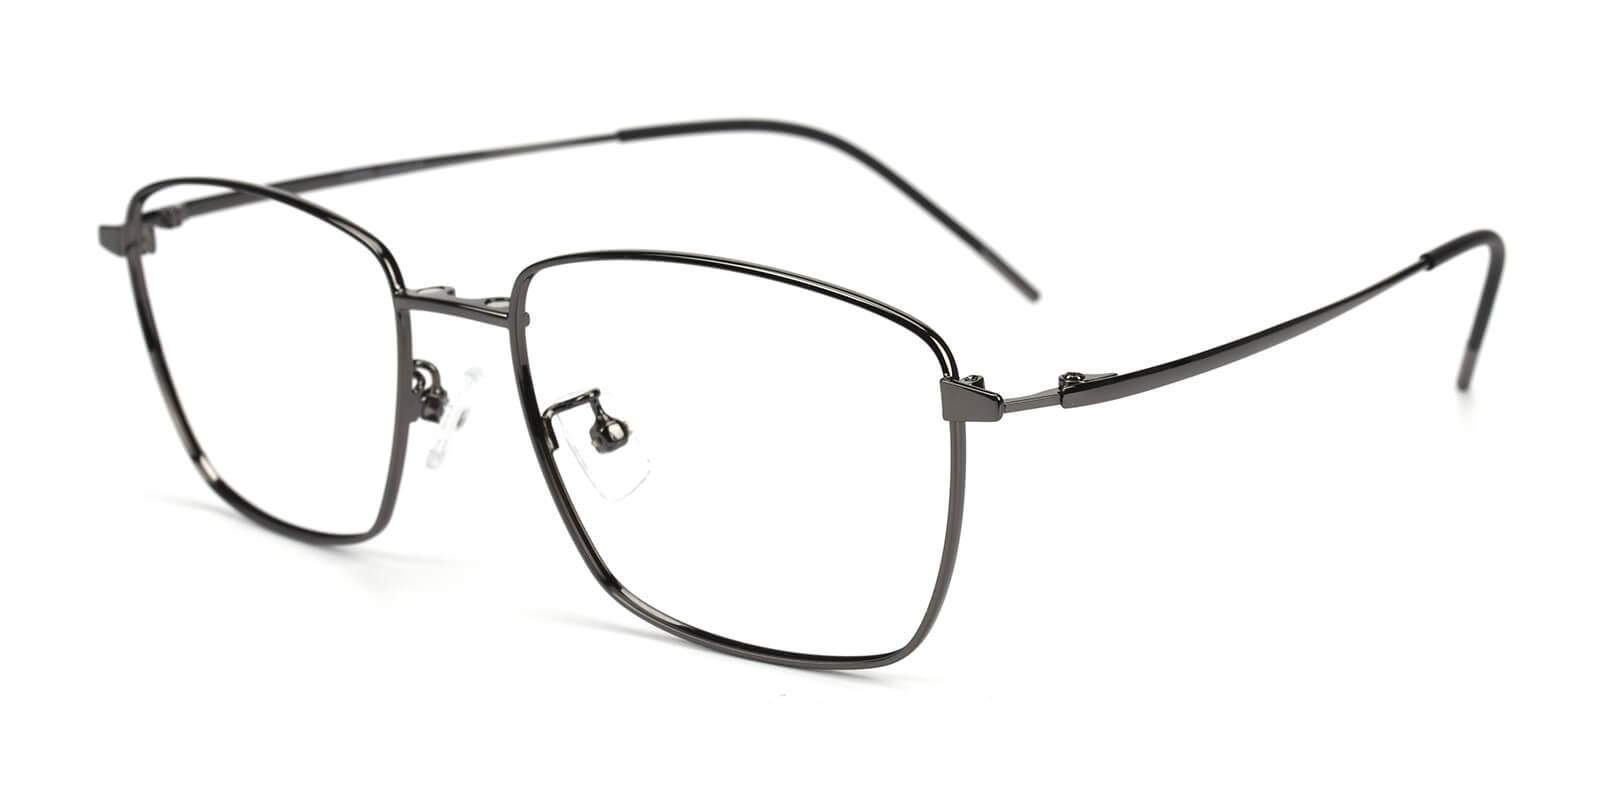 Bezel Gun Metal Eyeglasses , NosePads , SpringHinges Frames from ABBE Glasses